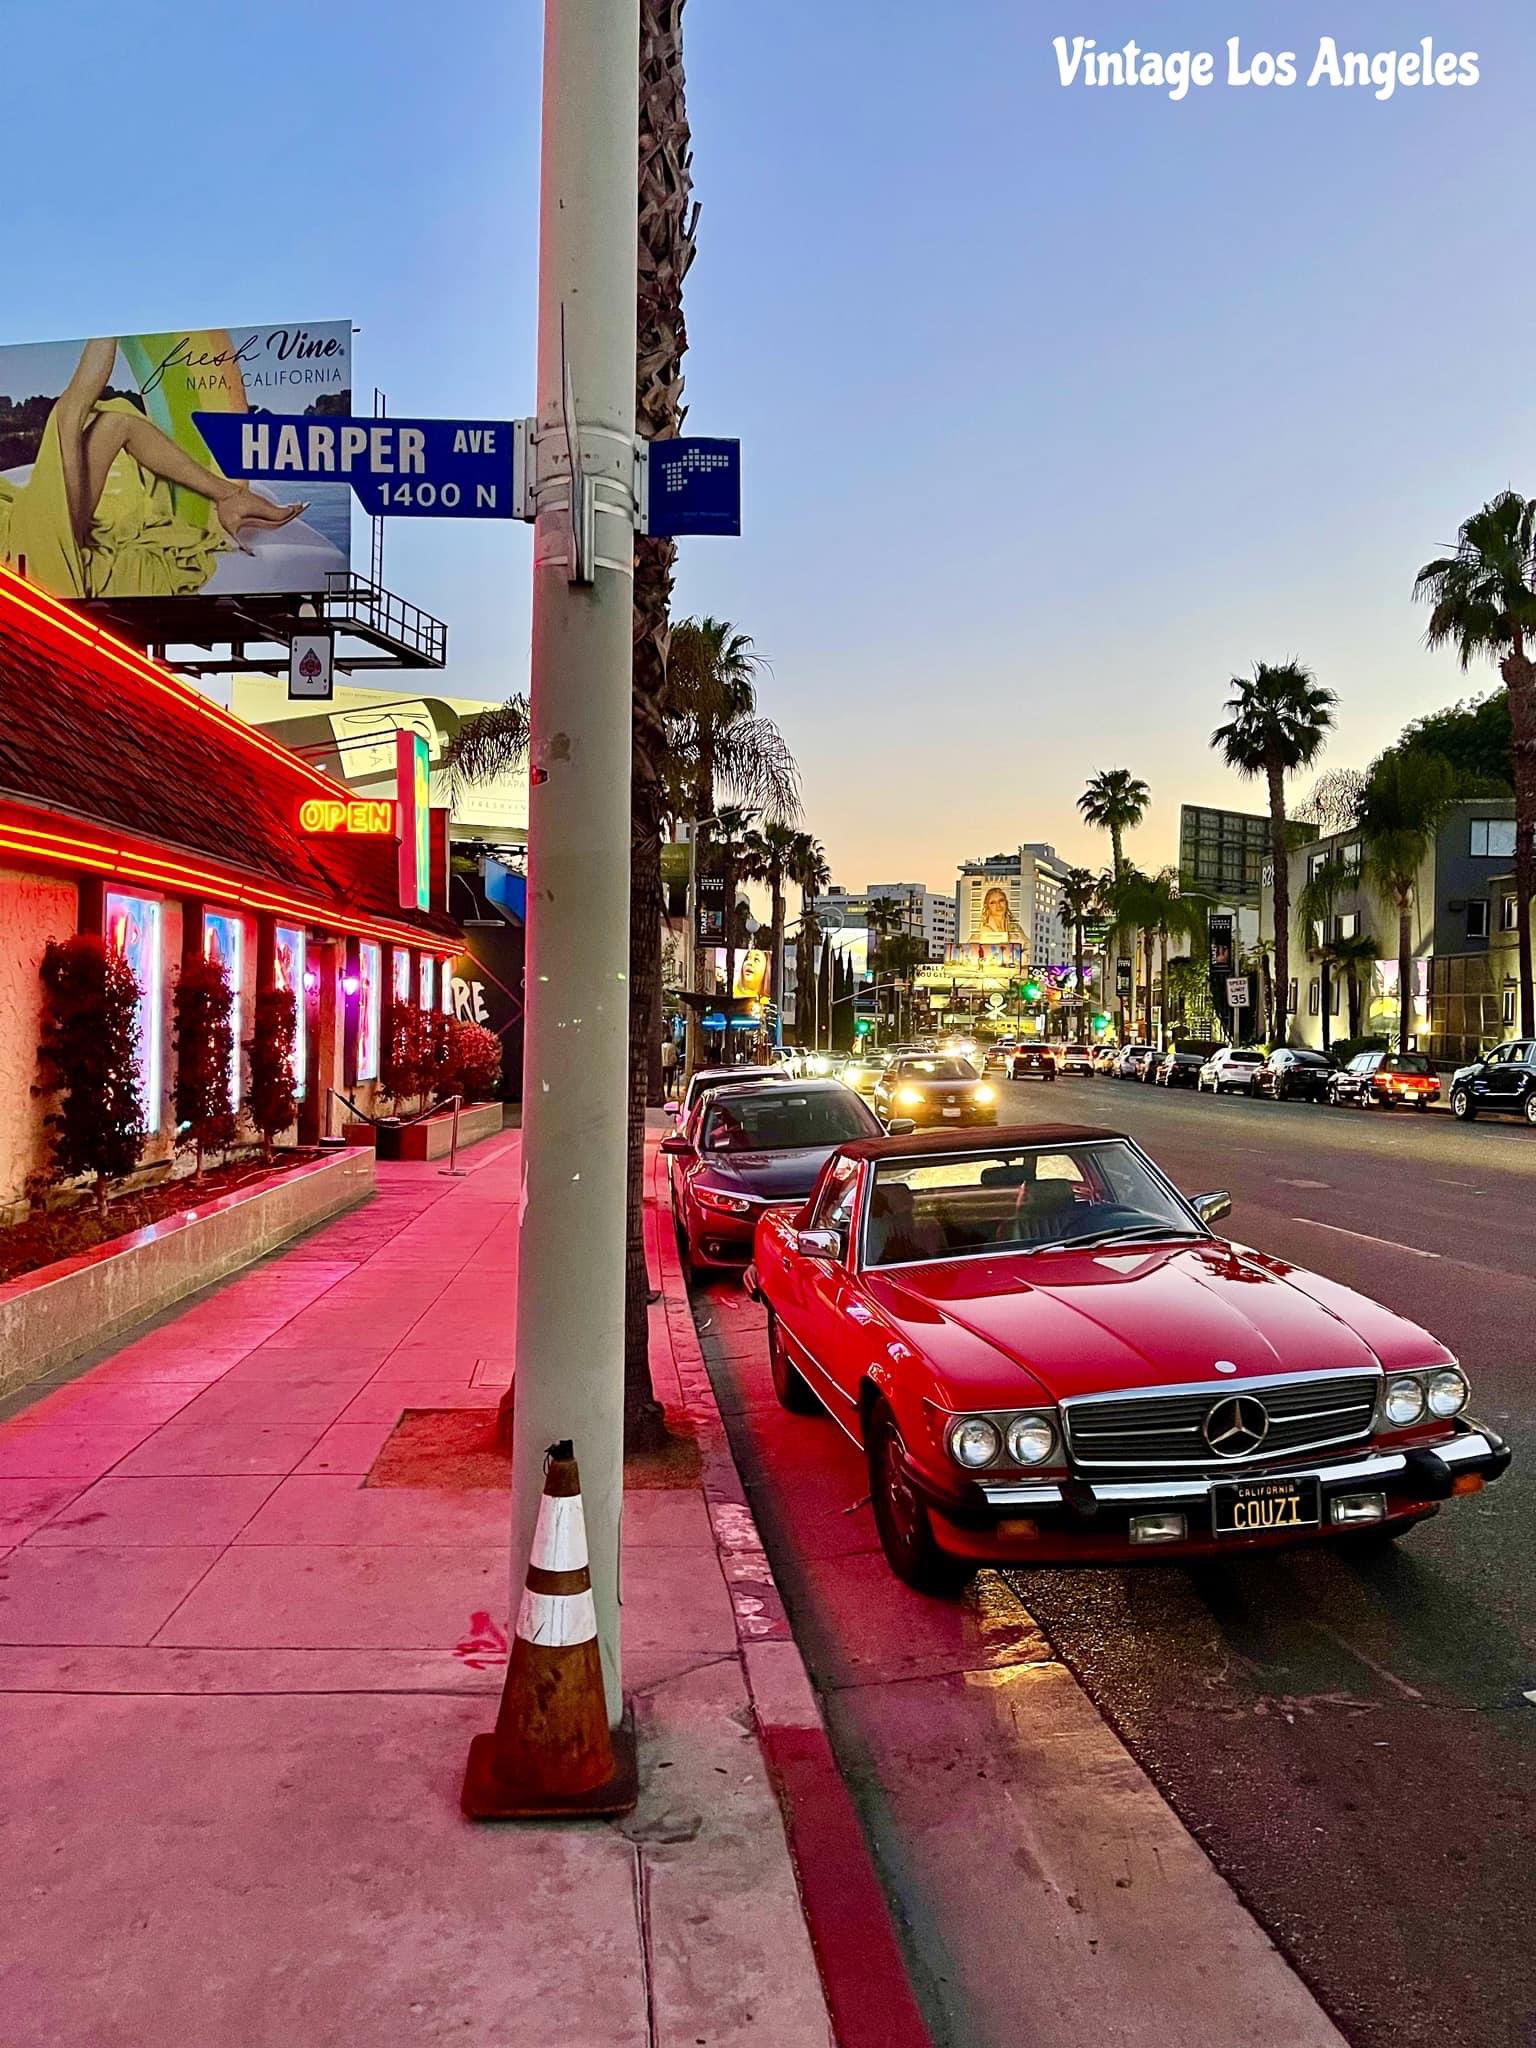 Vintage Los Angeles on X: 8pm on Sunset Strip 🚘